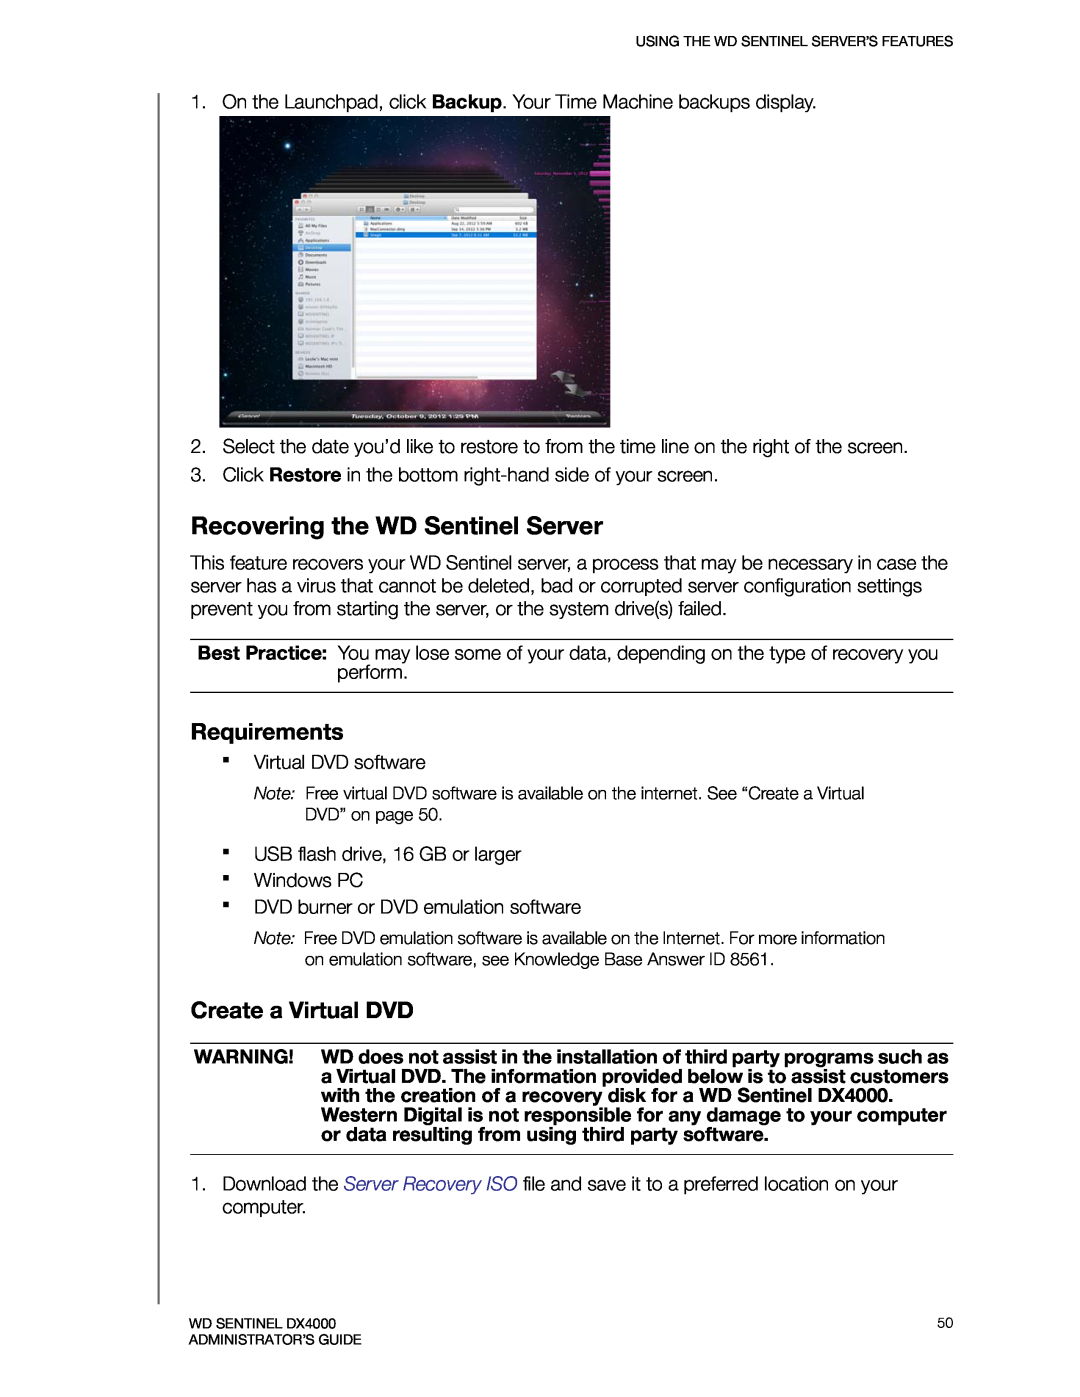 Western Digital WDBLGT0040KBK, WDBLGT0120KBK manual Recovering the WD Sentinel Server, Requirements, Create a Virtual DVD 